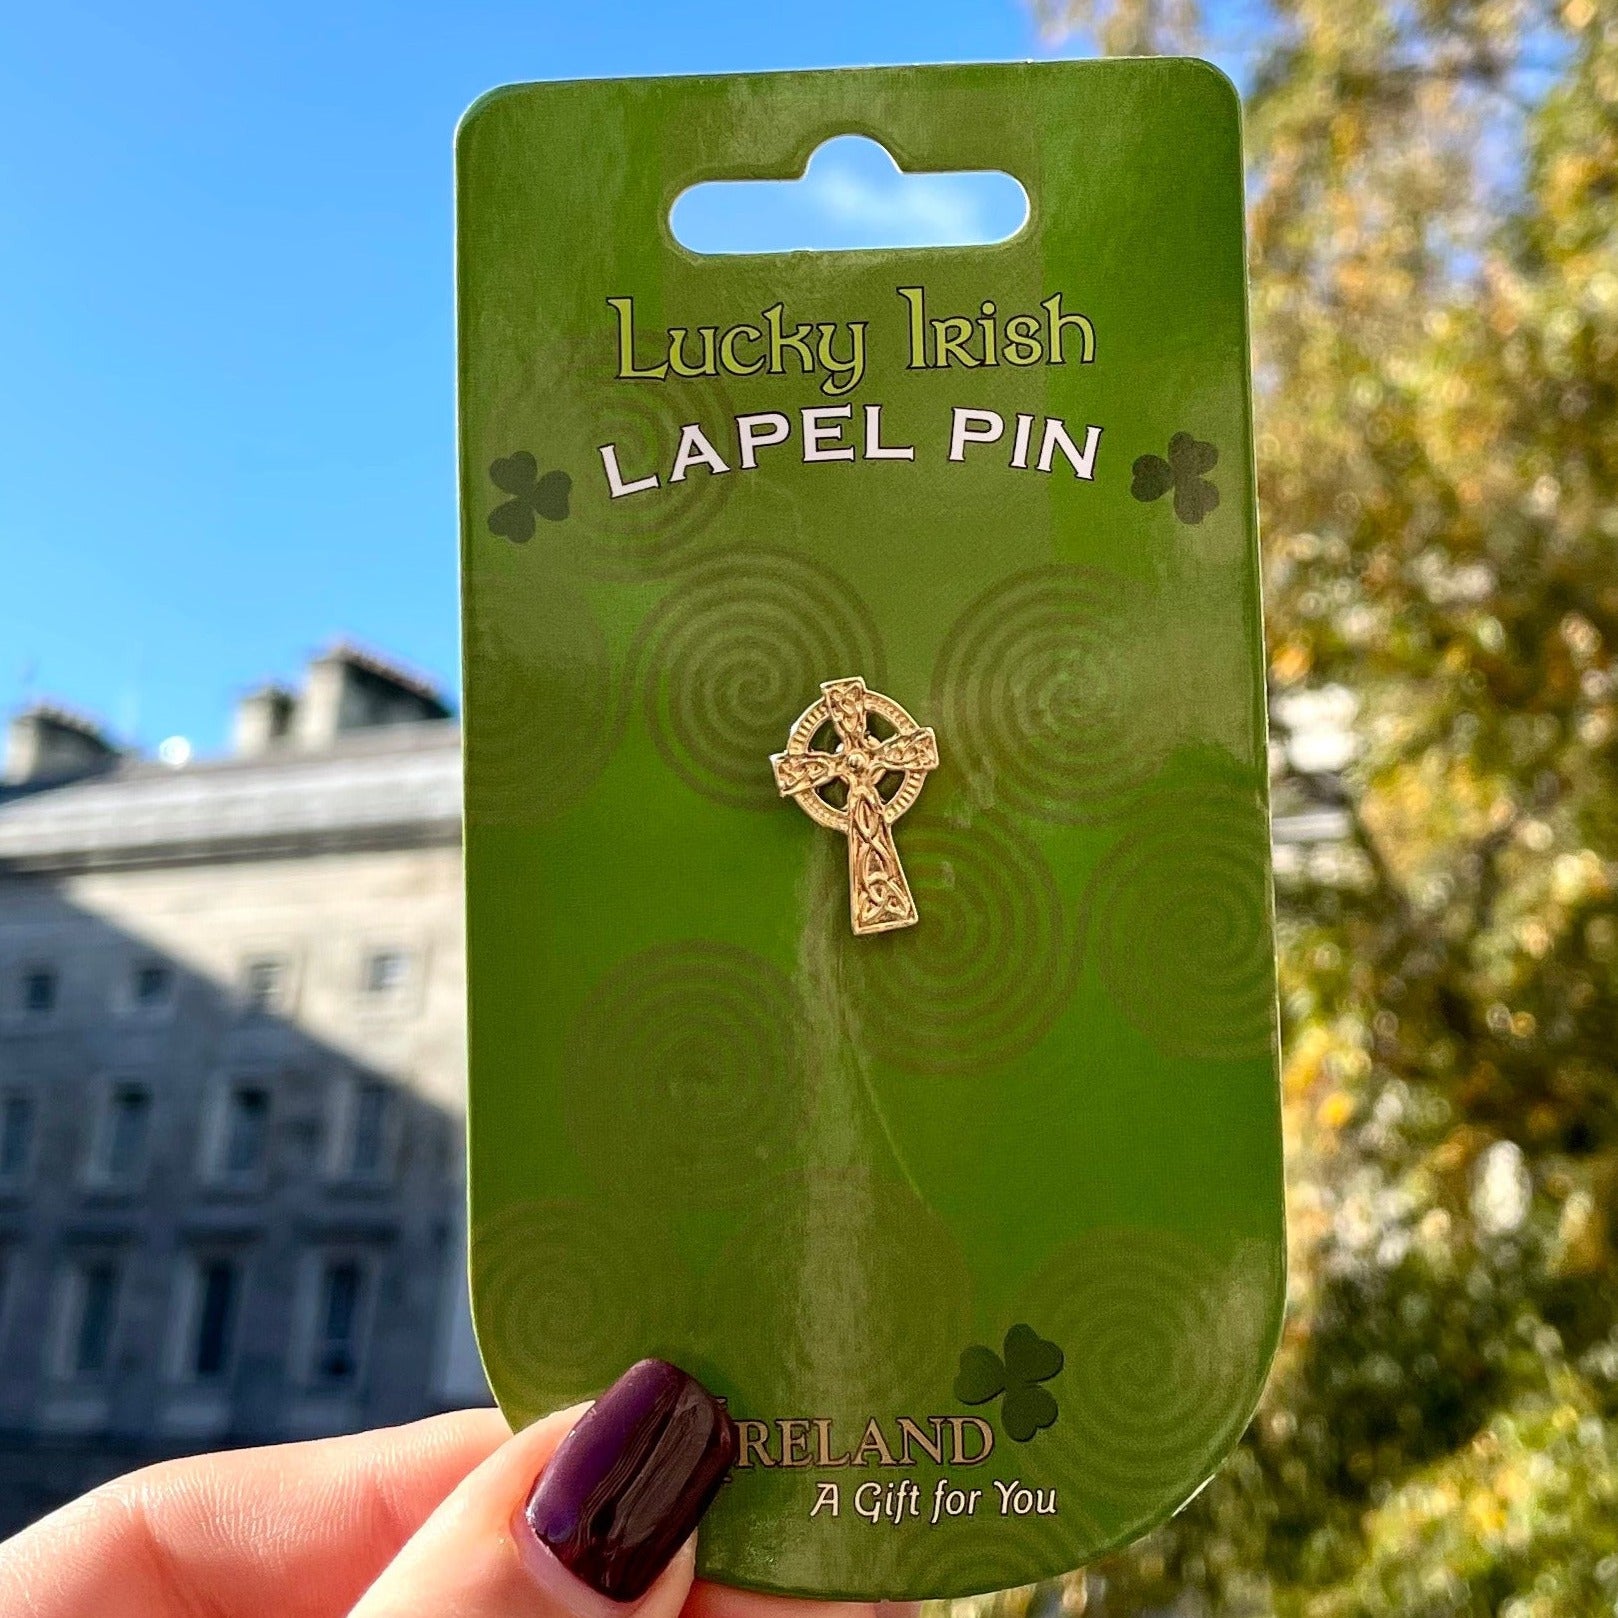 Celtic Cross Lapel Pin